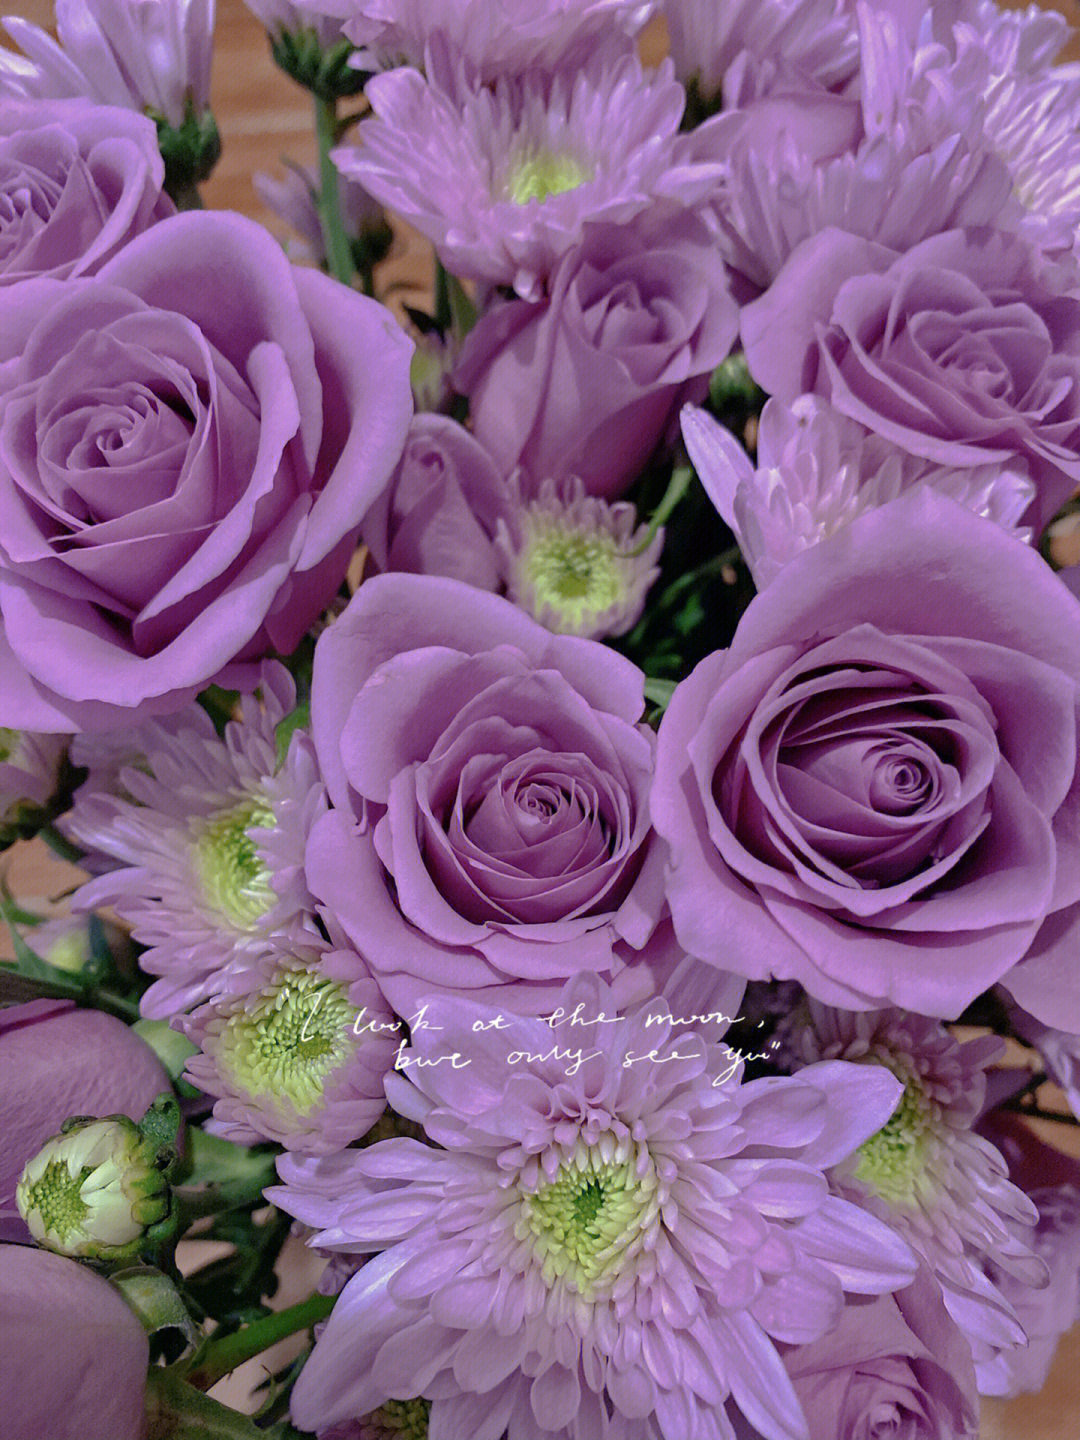 每天都有开心的事发生独角兽浪漫紫色玫瑰